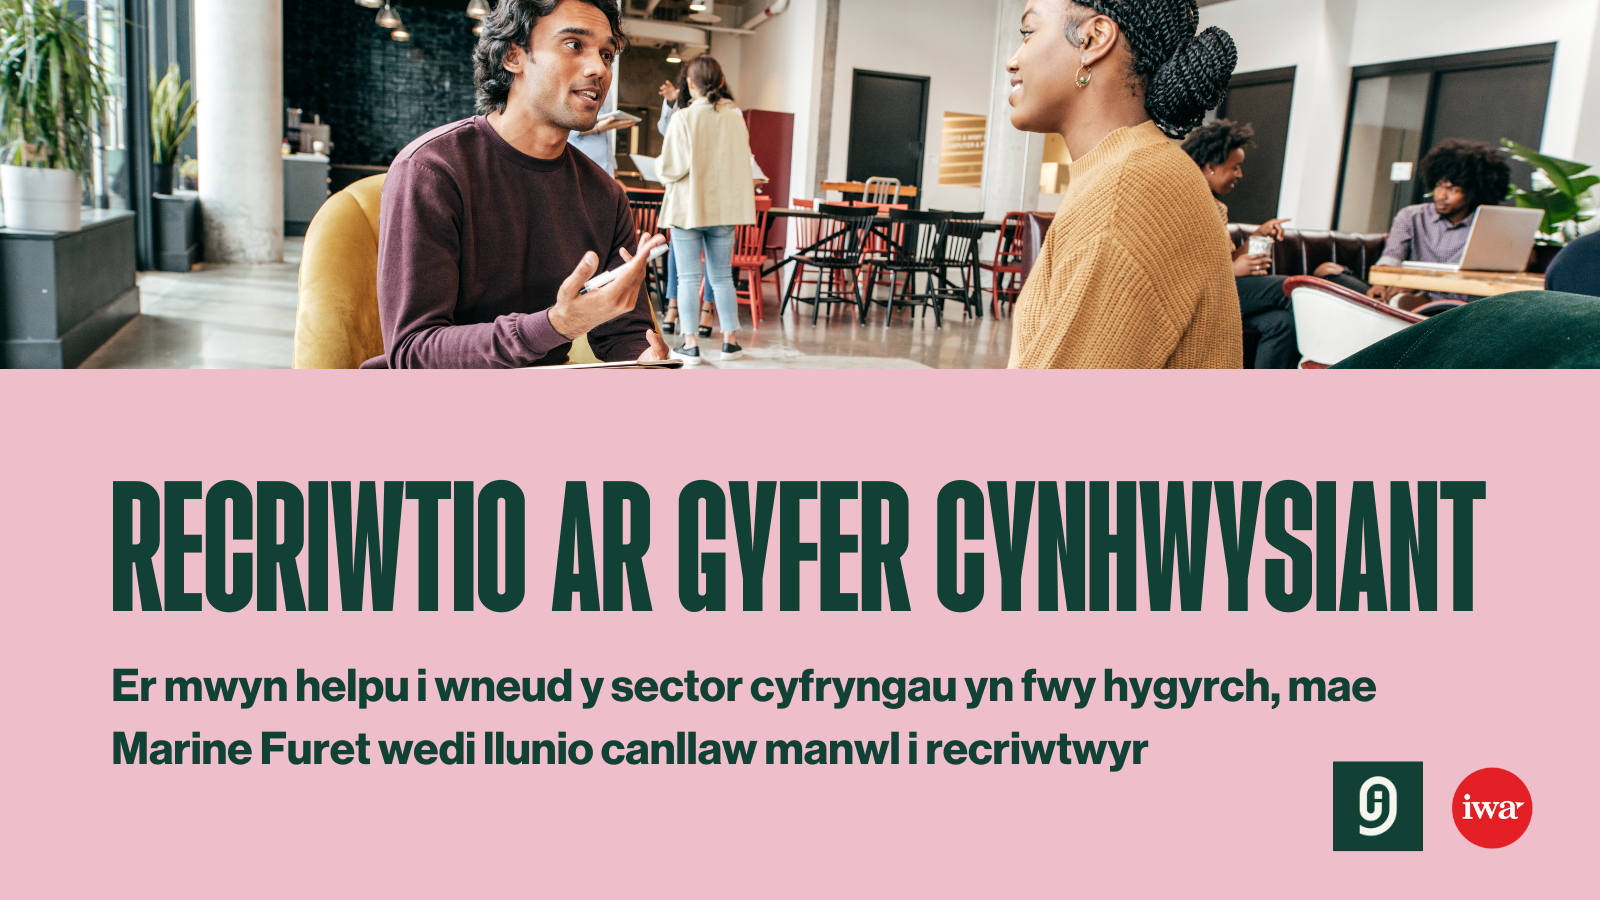 The cover of Recriwtio ar gyfer cynhwysiant: Canllaw i sefydliadau cyfryngau